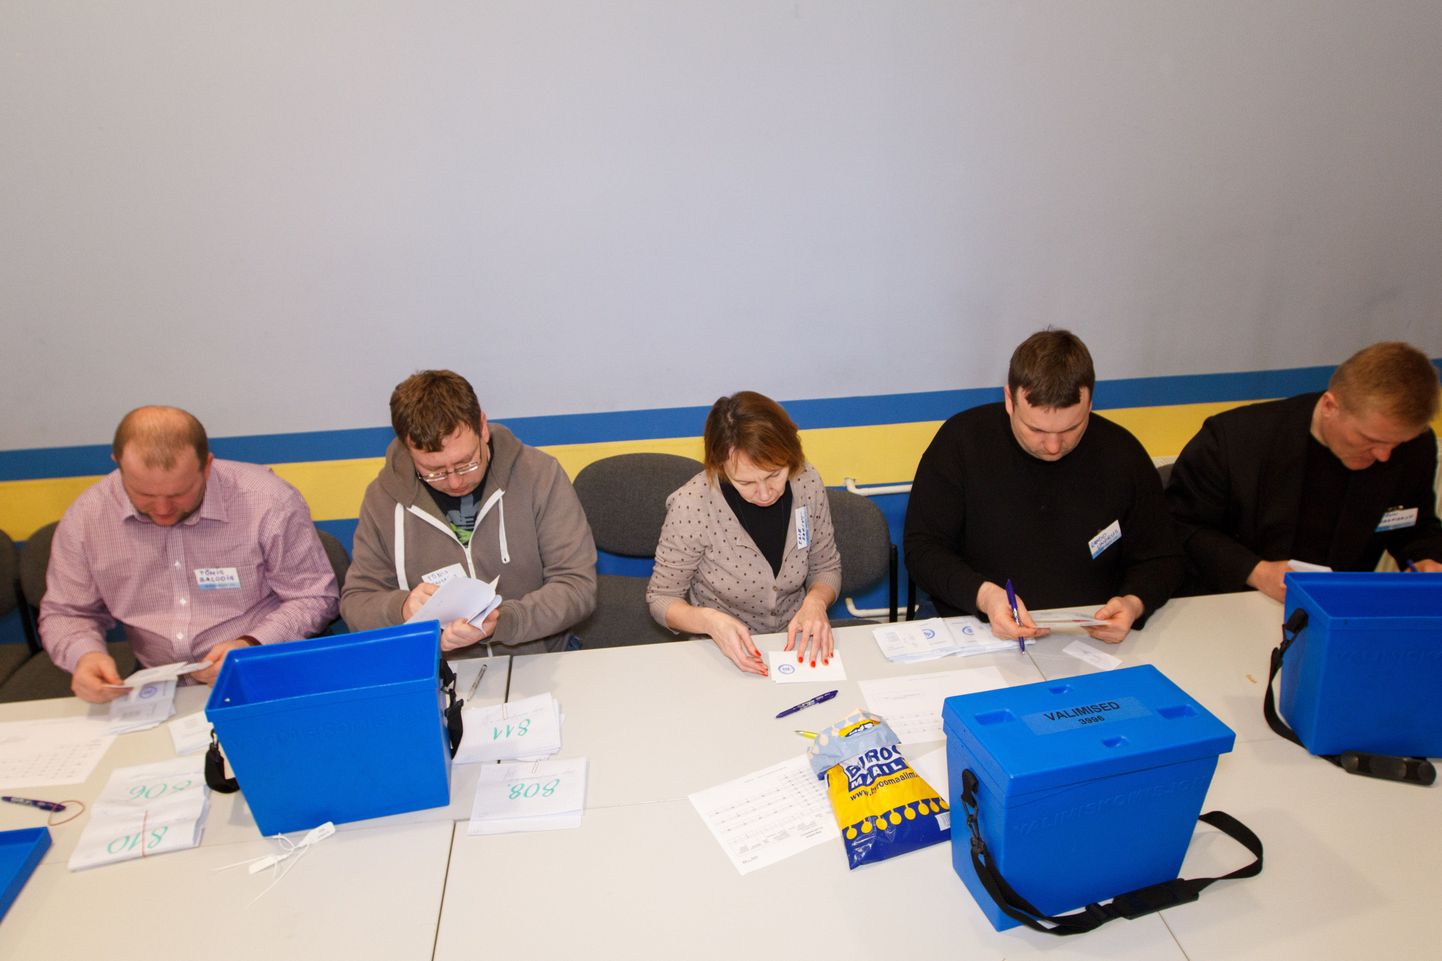 Riigikogu valimised 2015. Häälte ülelugemine, kehtetute ja rikutud valimissedelite kontroll maakonna valimiskomisjonis.